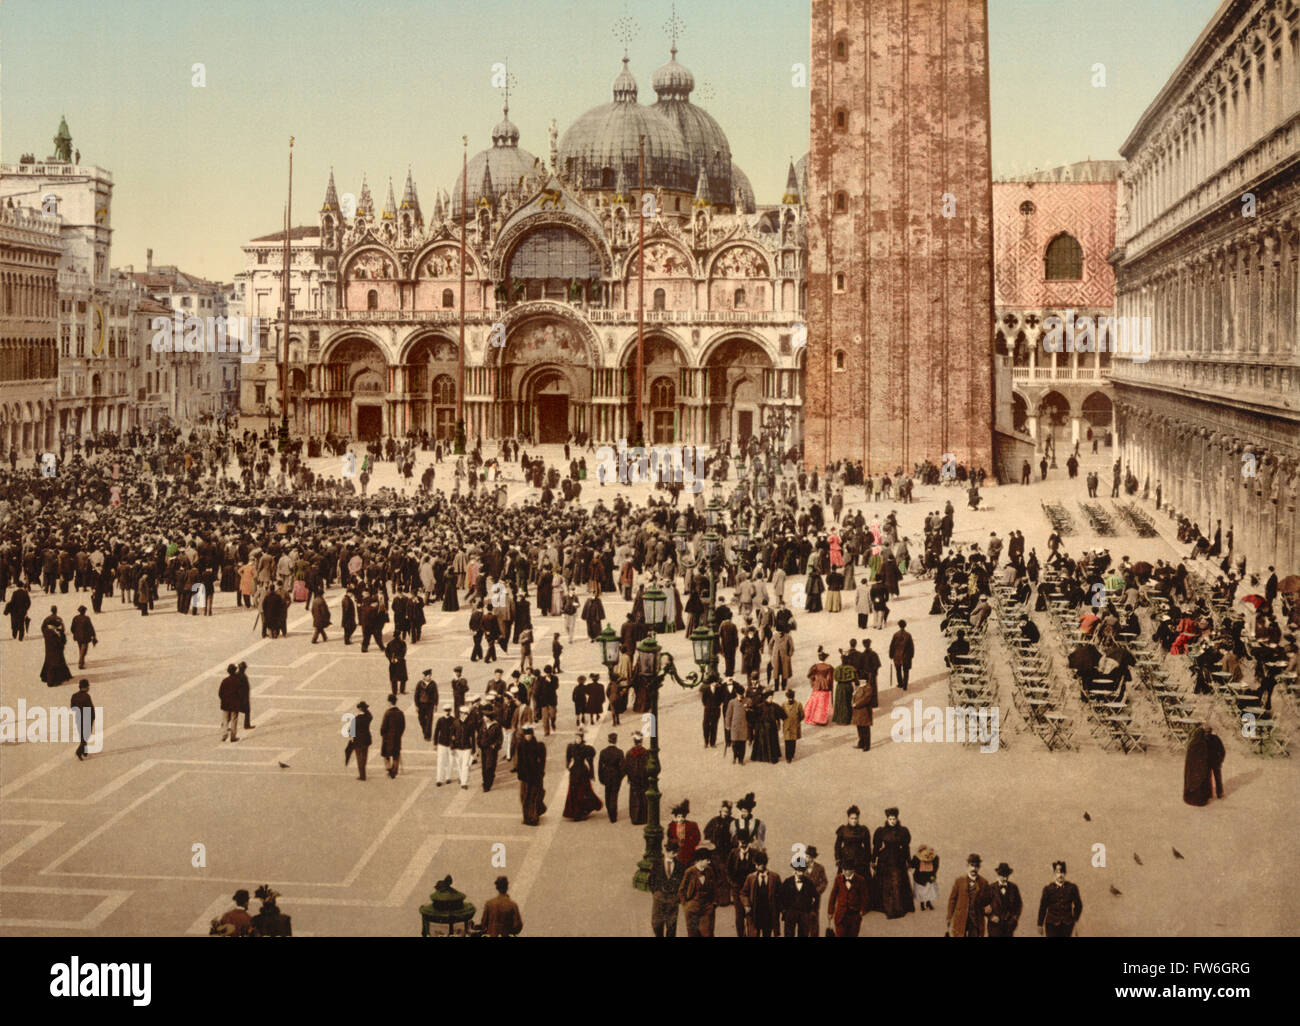 Les concerts, la Place Saint Marc, Venise, Italie, impression Photochrome, vers 1900 Banque D'Images